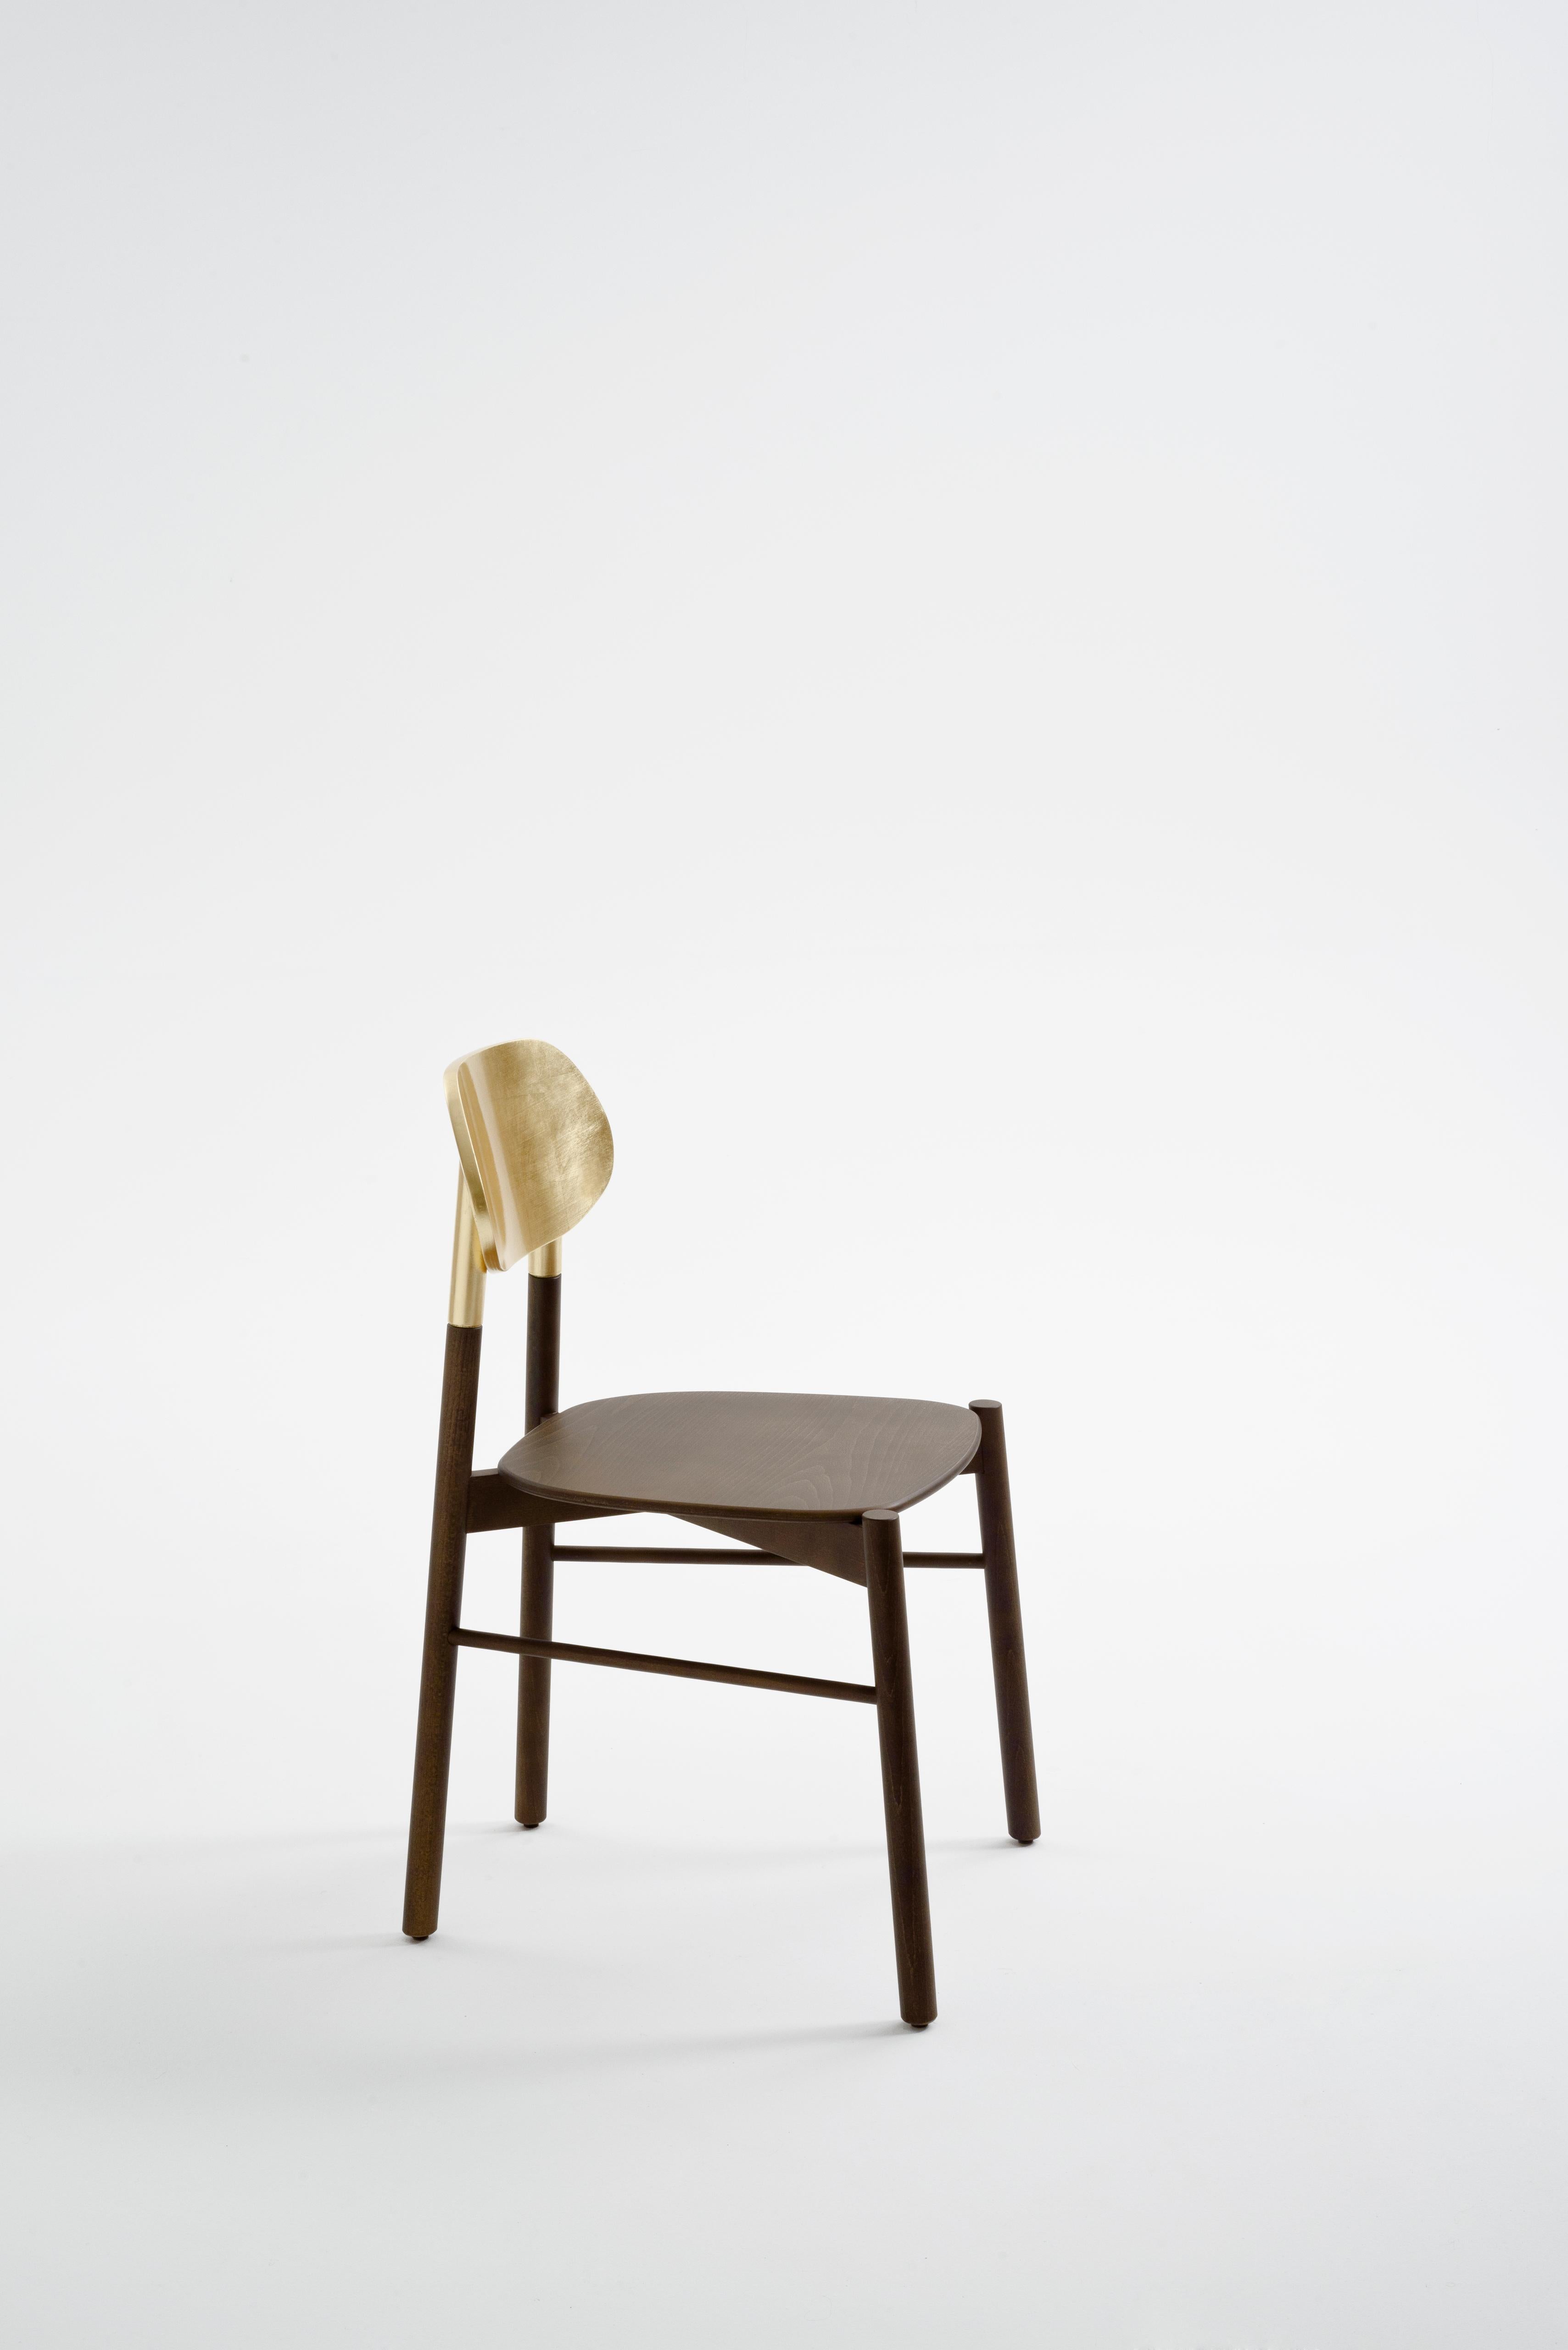 Il s'agit d'un ensemble de 2 chaises, emballées dans une seule boîte. Une chaise essentielle dans la forme, mais précieuse pour la structure en noyer et l'authentique dossier en feuilles d'or fait à la main. Il est extrêmement confortable et il est